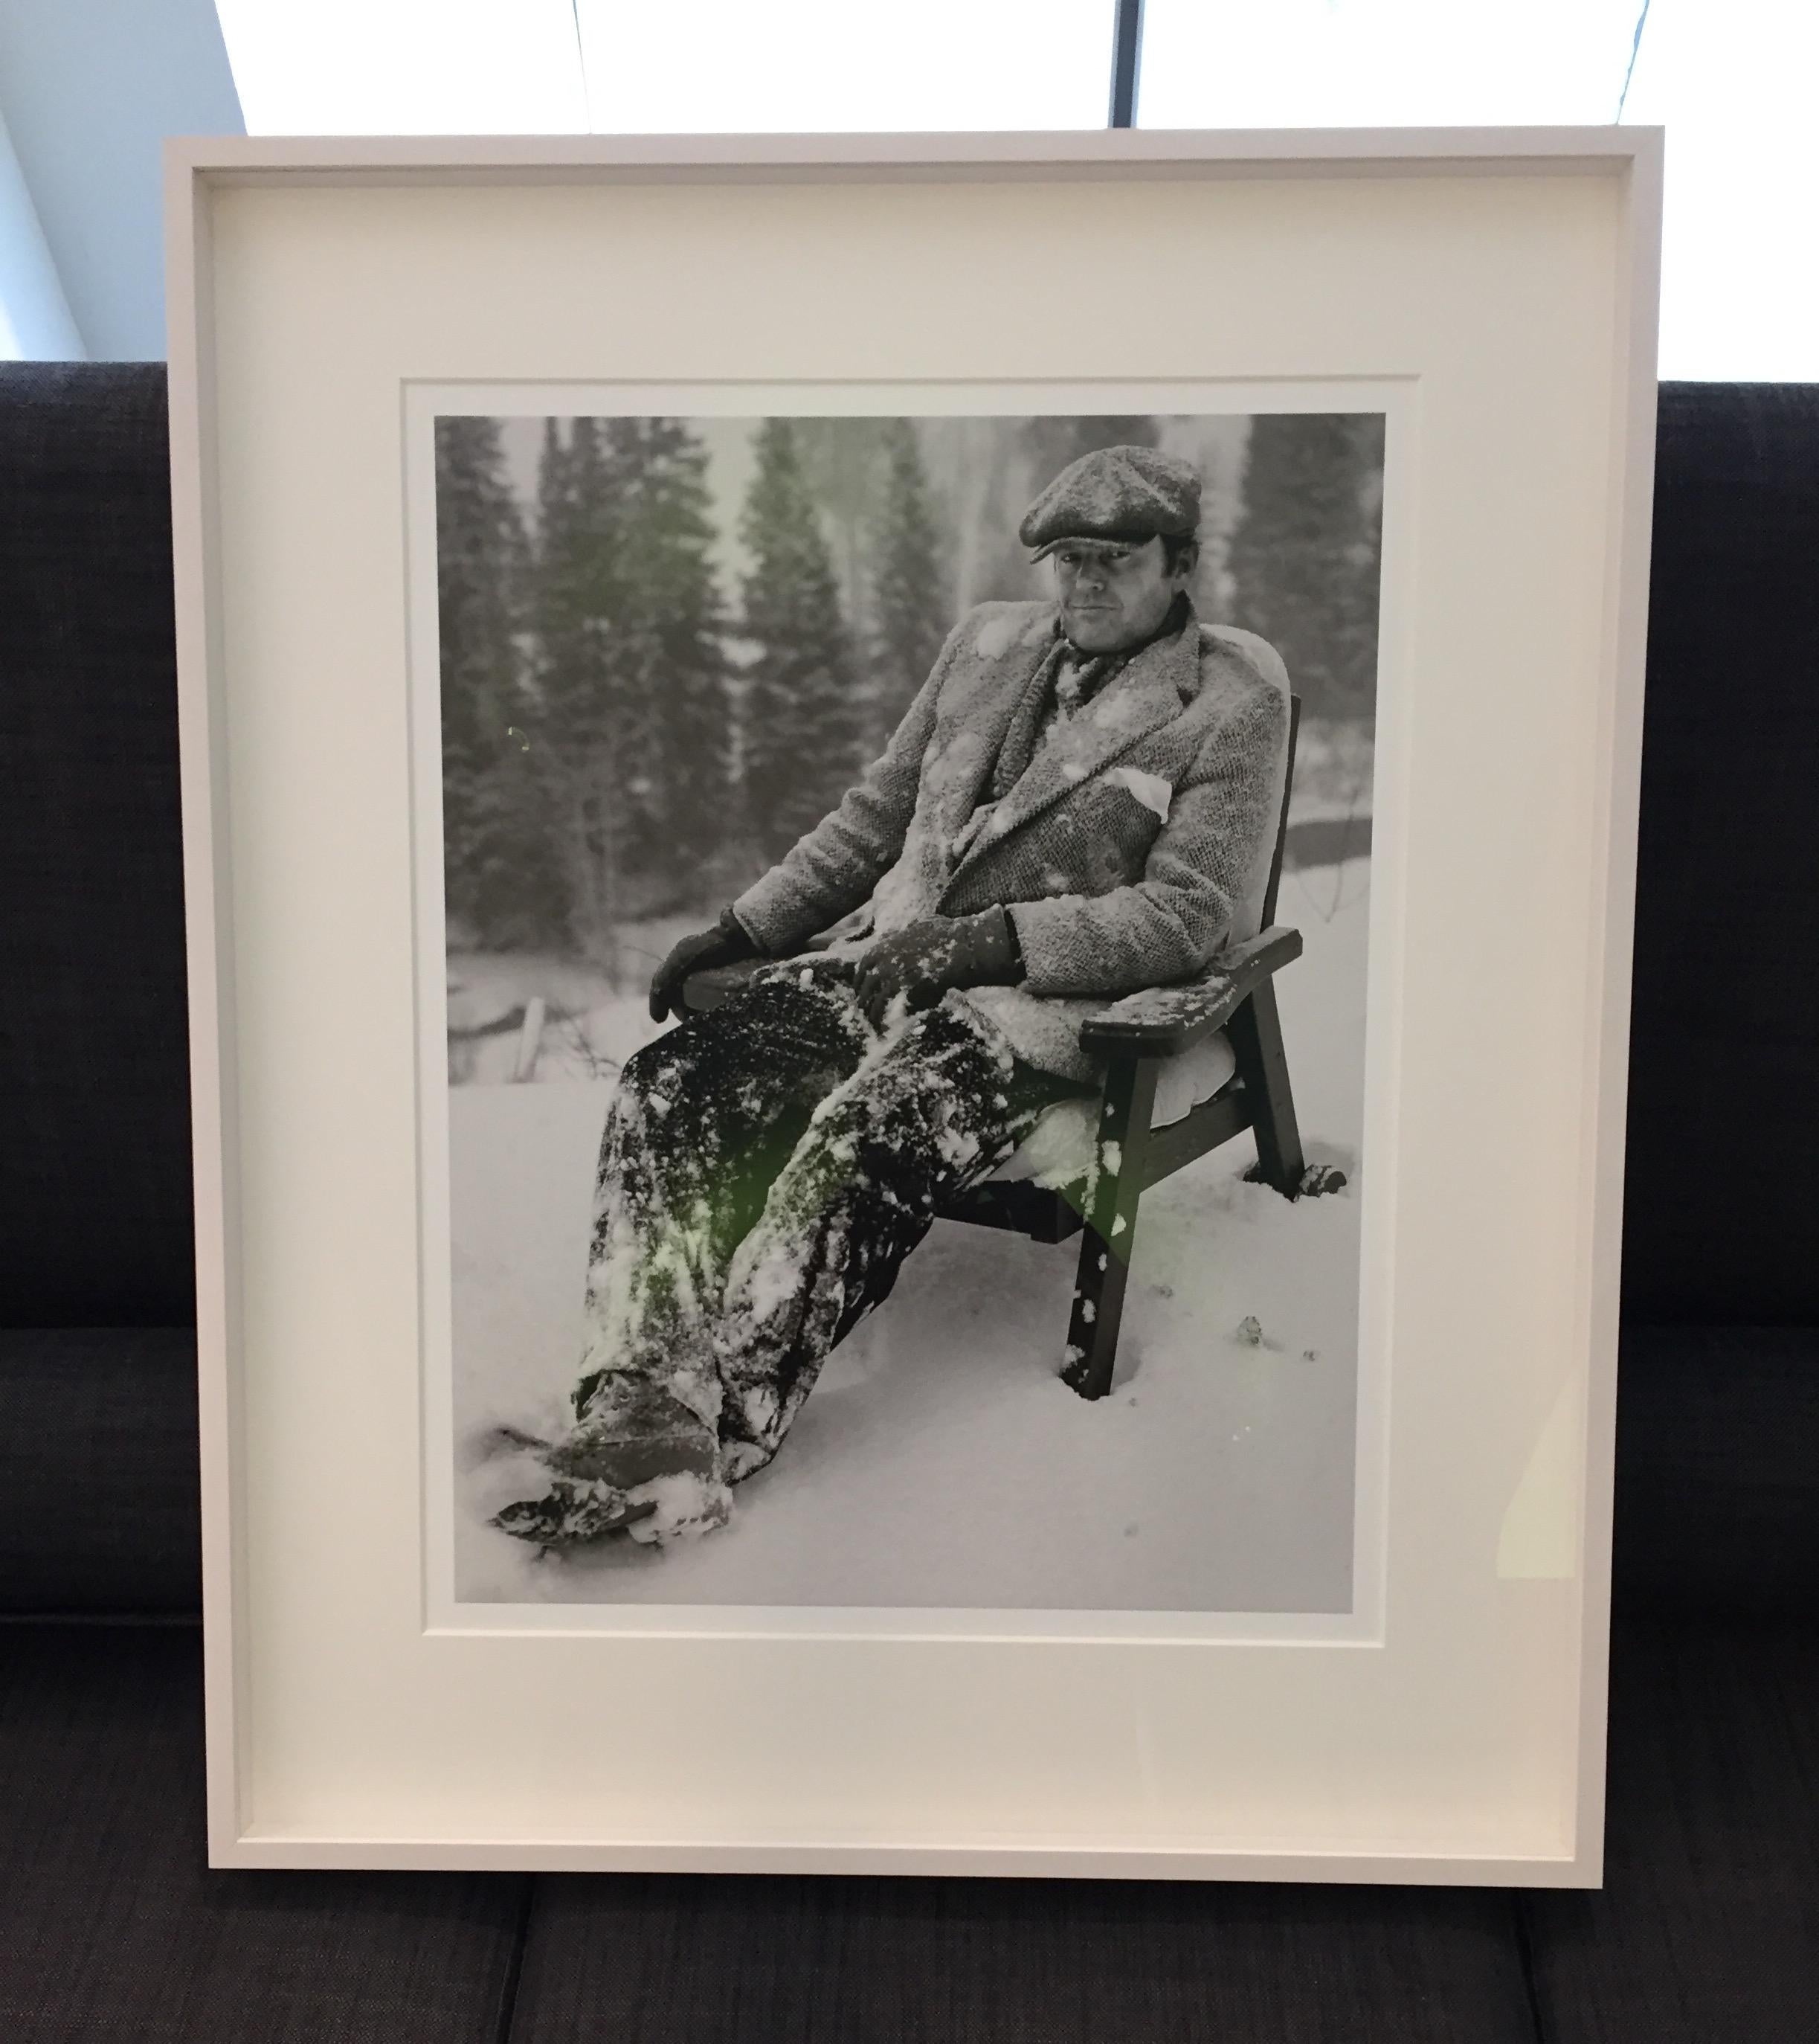 Jack Nicholson II – Schauspieler in einem mit Schnee überzogenen Holzstuhl – Photograph von Albert Watson